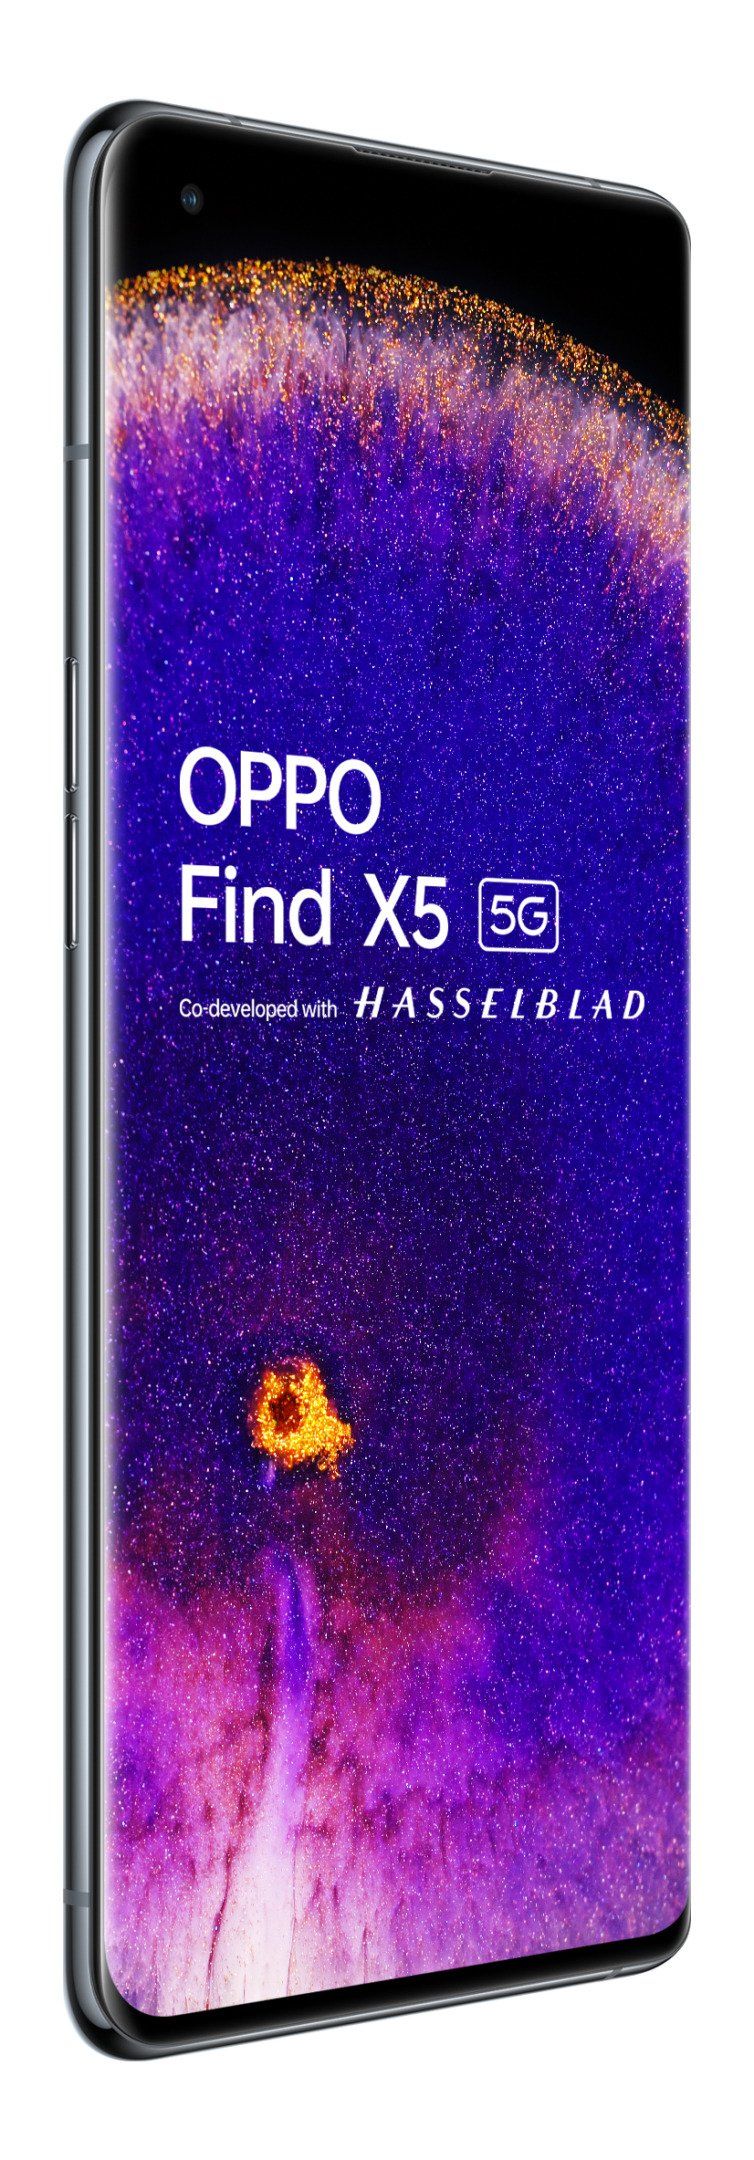 หลุดภาพเรนเดอร์ OPPO Find X5 พร้อมข้อมูลสเปคชุดใหญ่